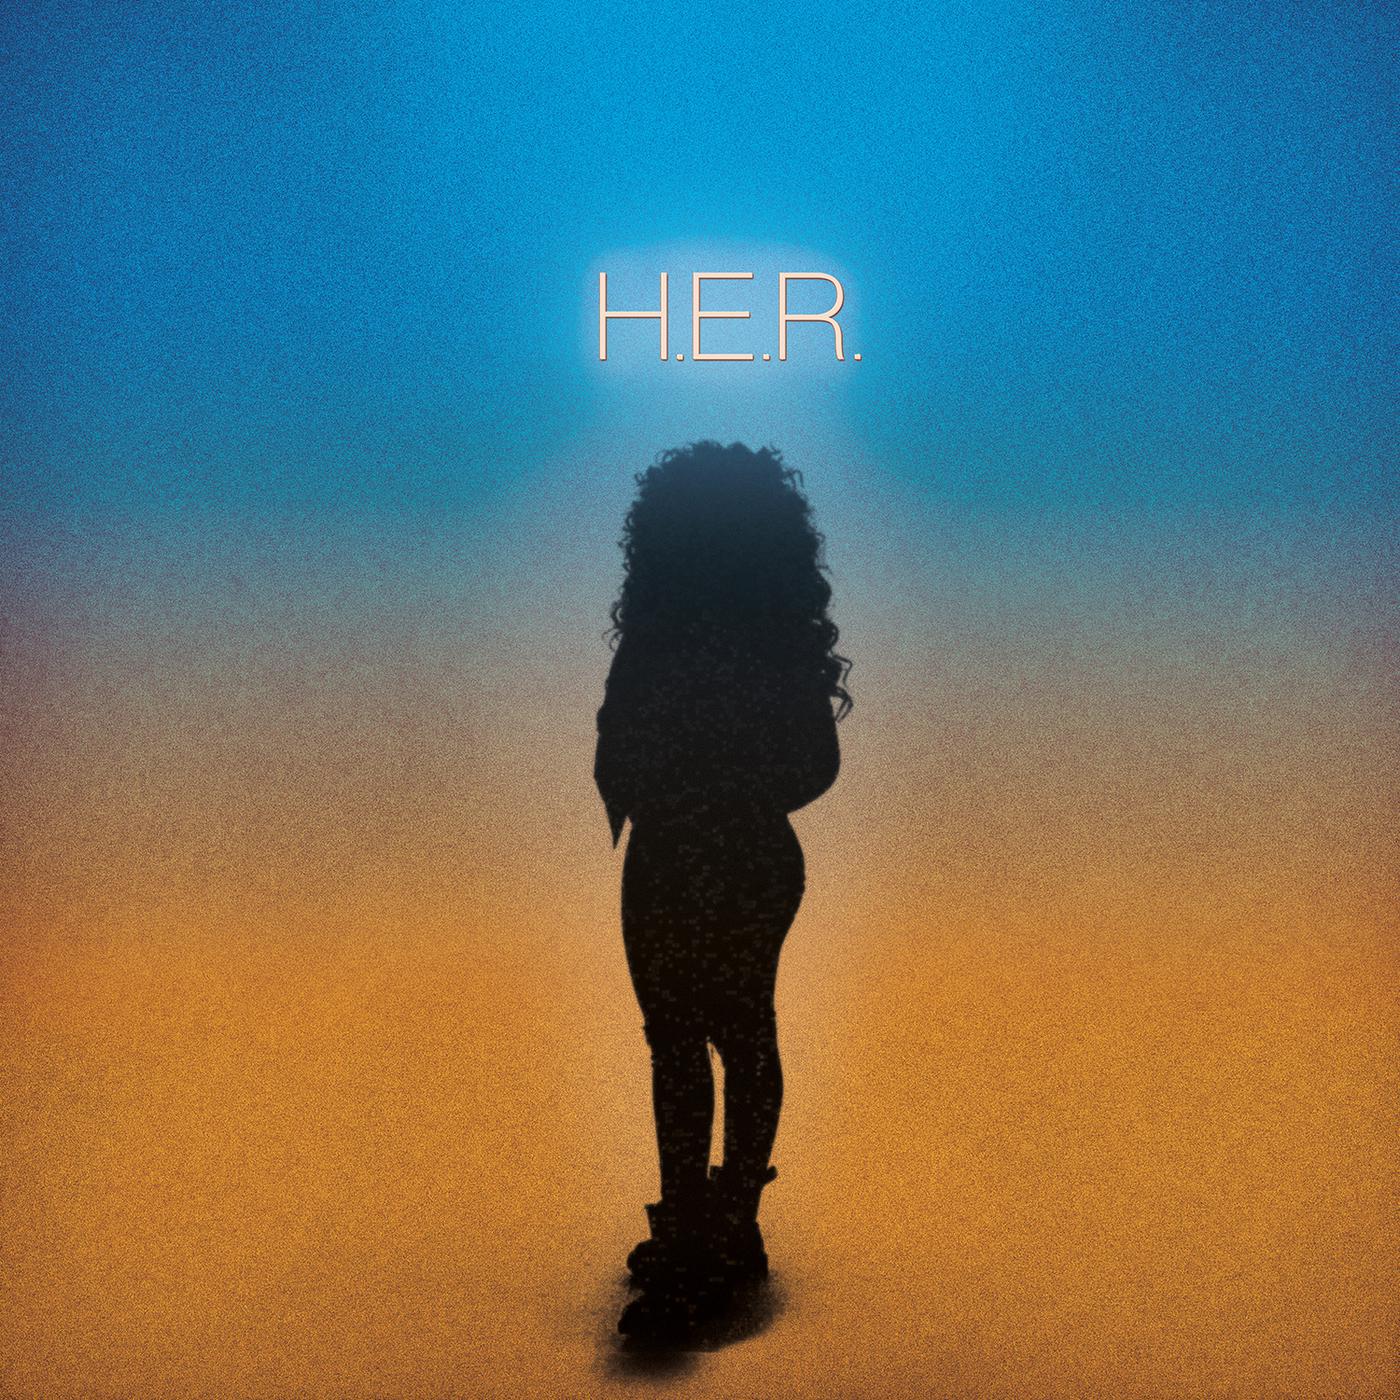 Avenue歌词 歌手H.E.R.-专辑H.E.R.-单曲《Avenue》LRC歌词下载